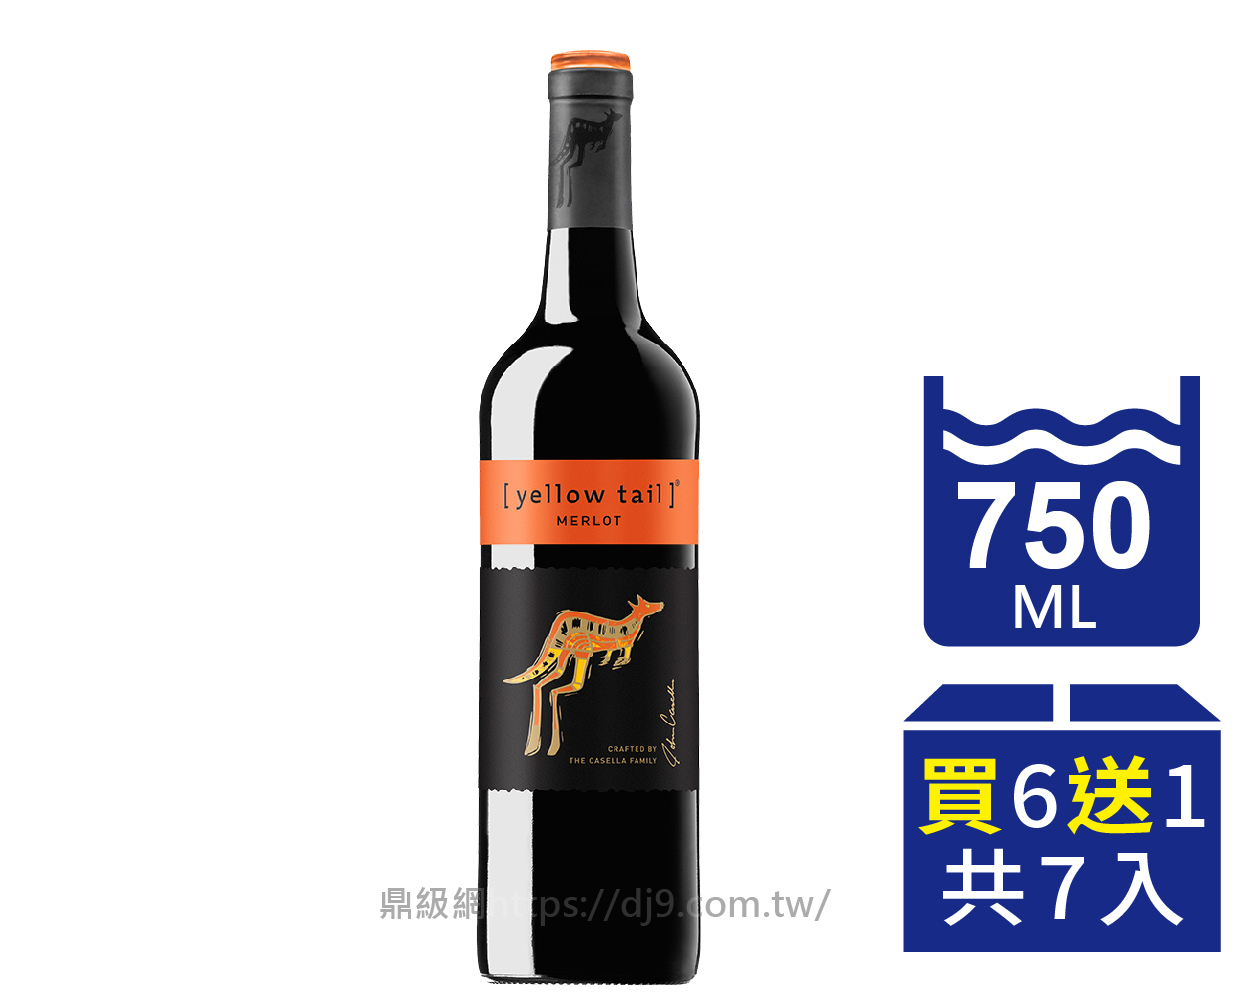 【箱購優惠】黃尾袋鼠 梅洛紅葡萄酒(380元x6瓶送1瓶)